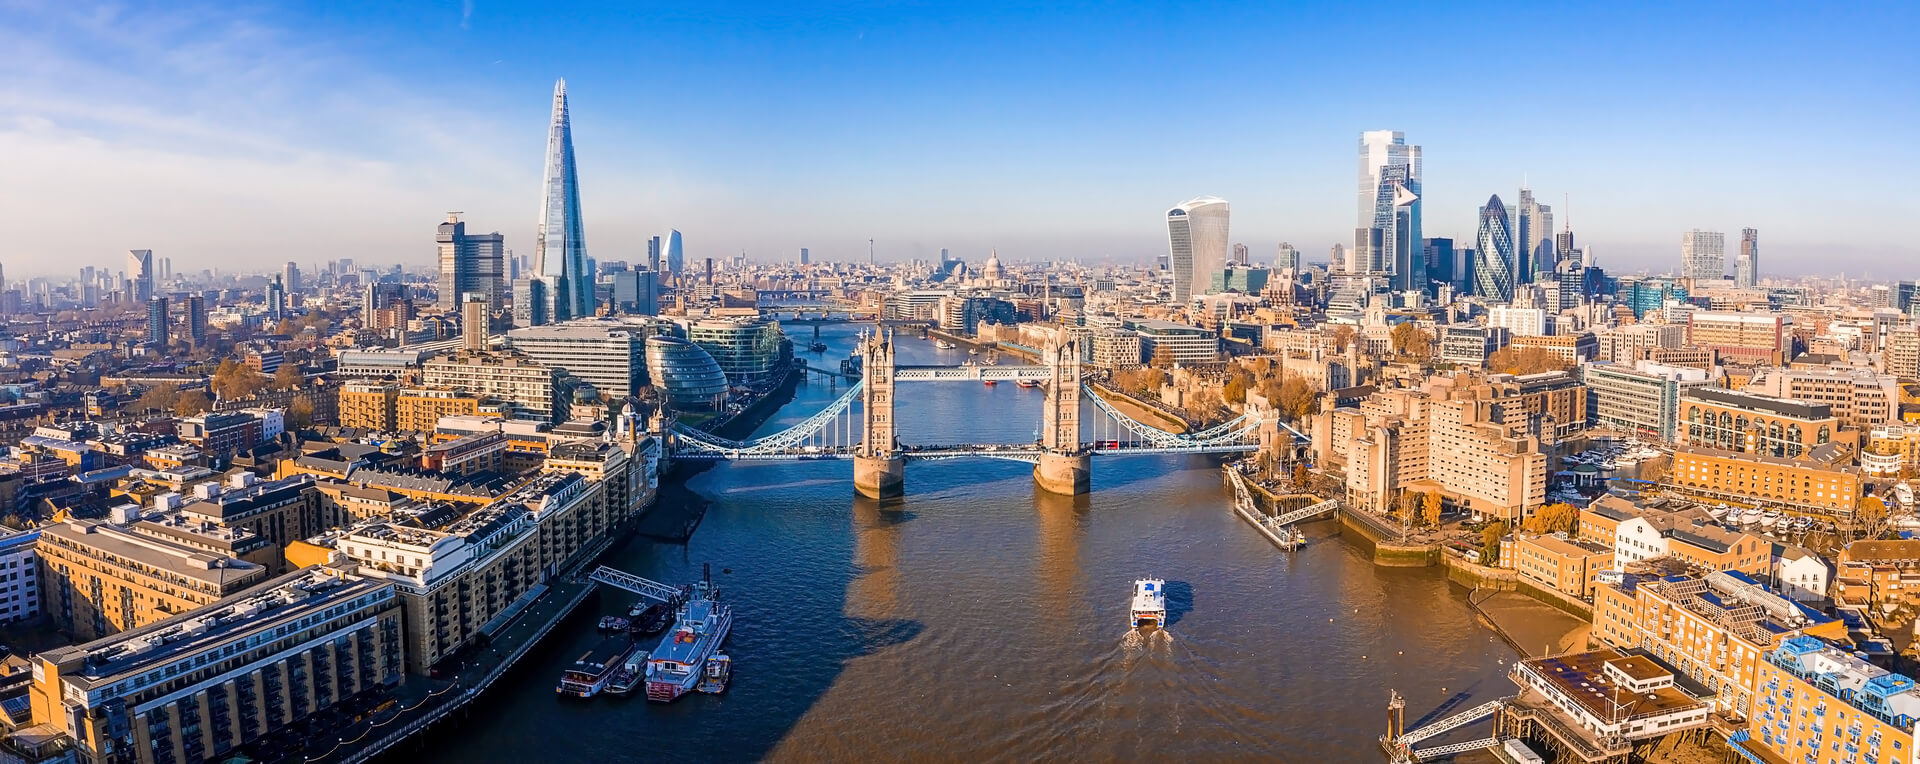 Vue aérienne du Tower Bridge à Londres. L'un des ponts les plus célèbres de Londres et l'un des points de repère incontournables de Londres. Magnifique panorama du Tower Bridge de Londres.